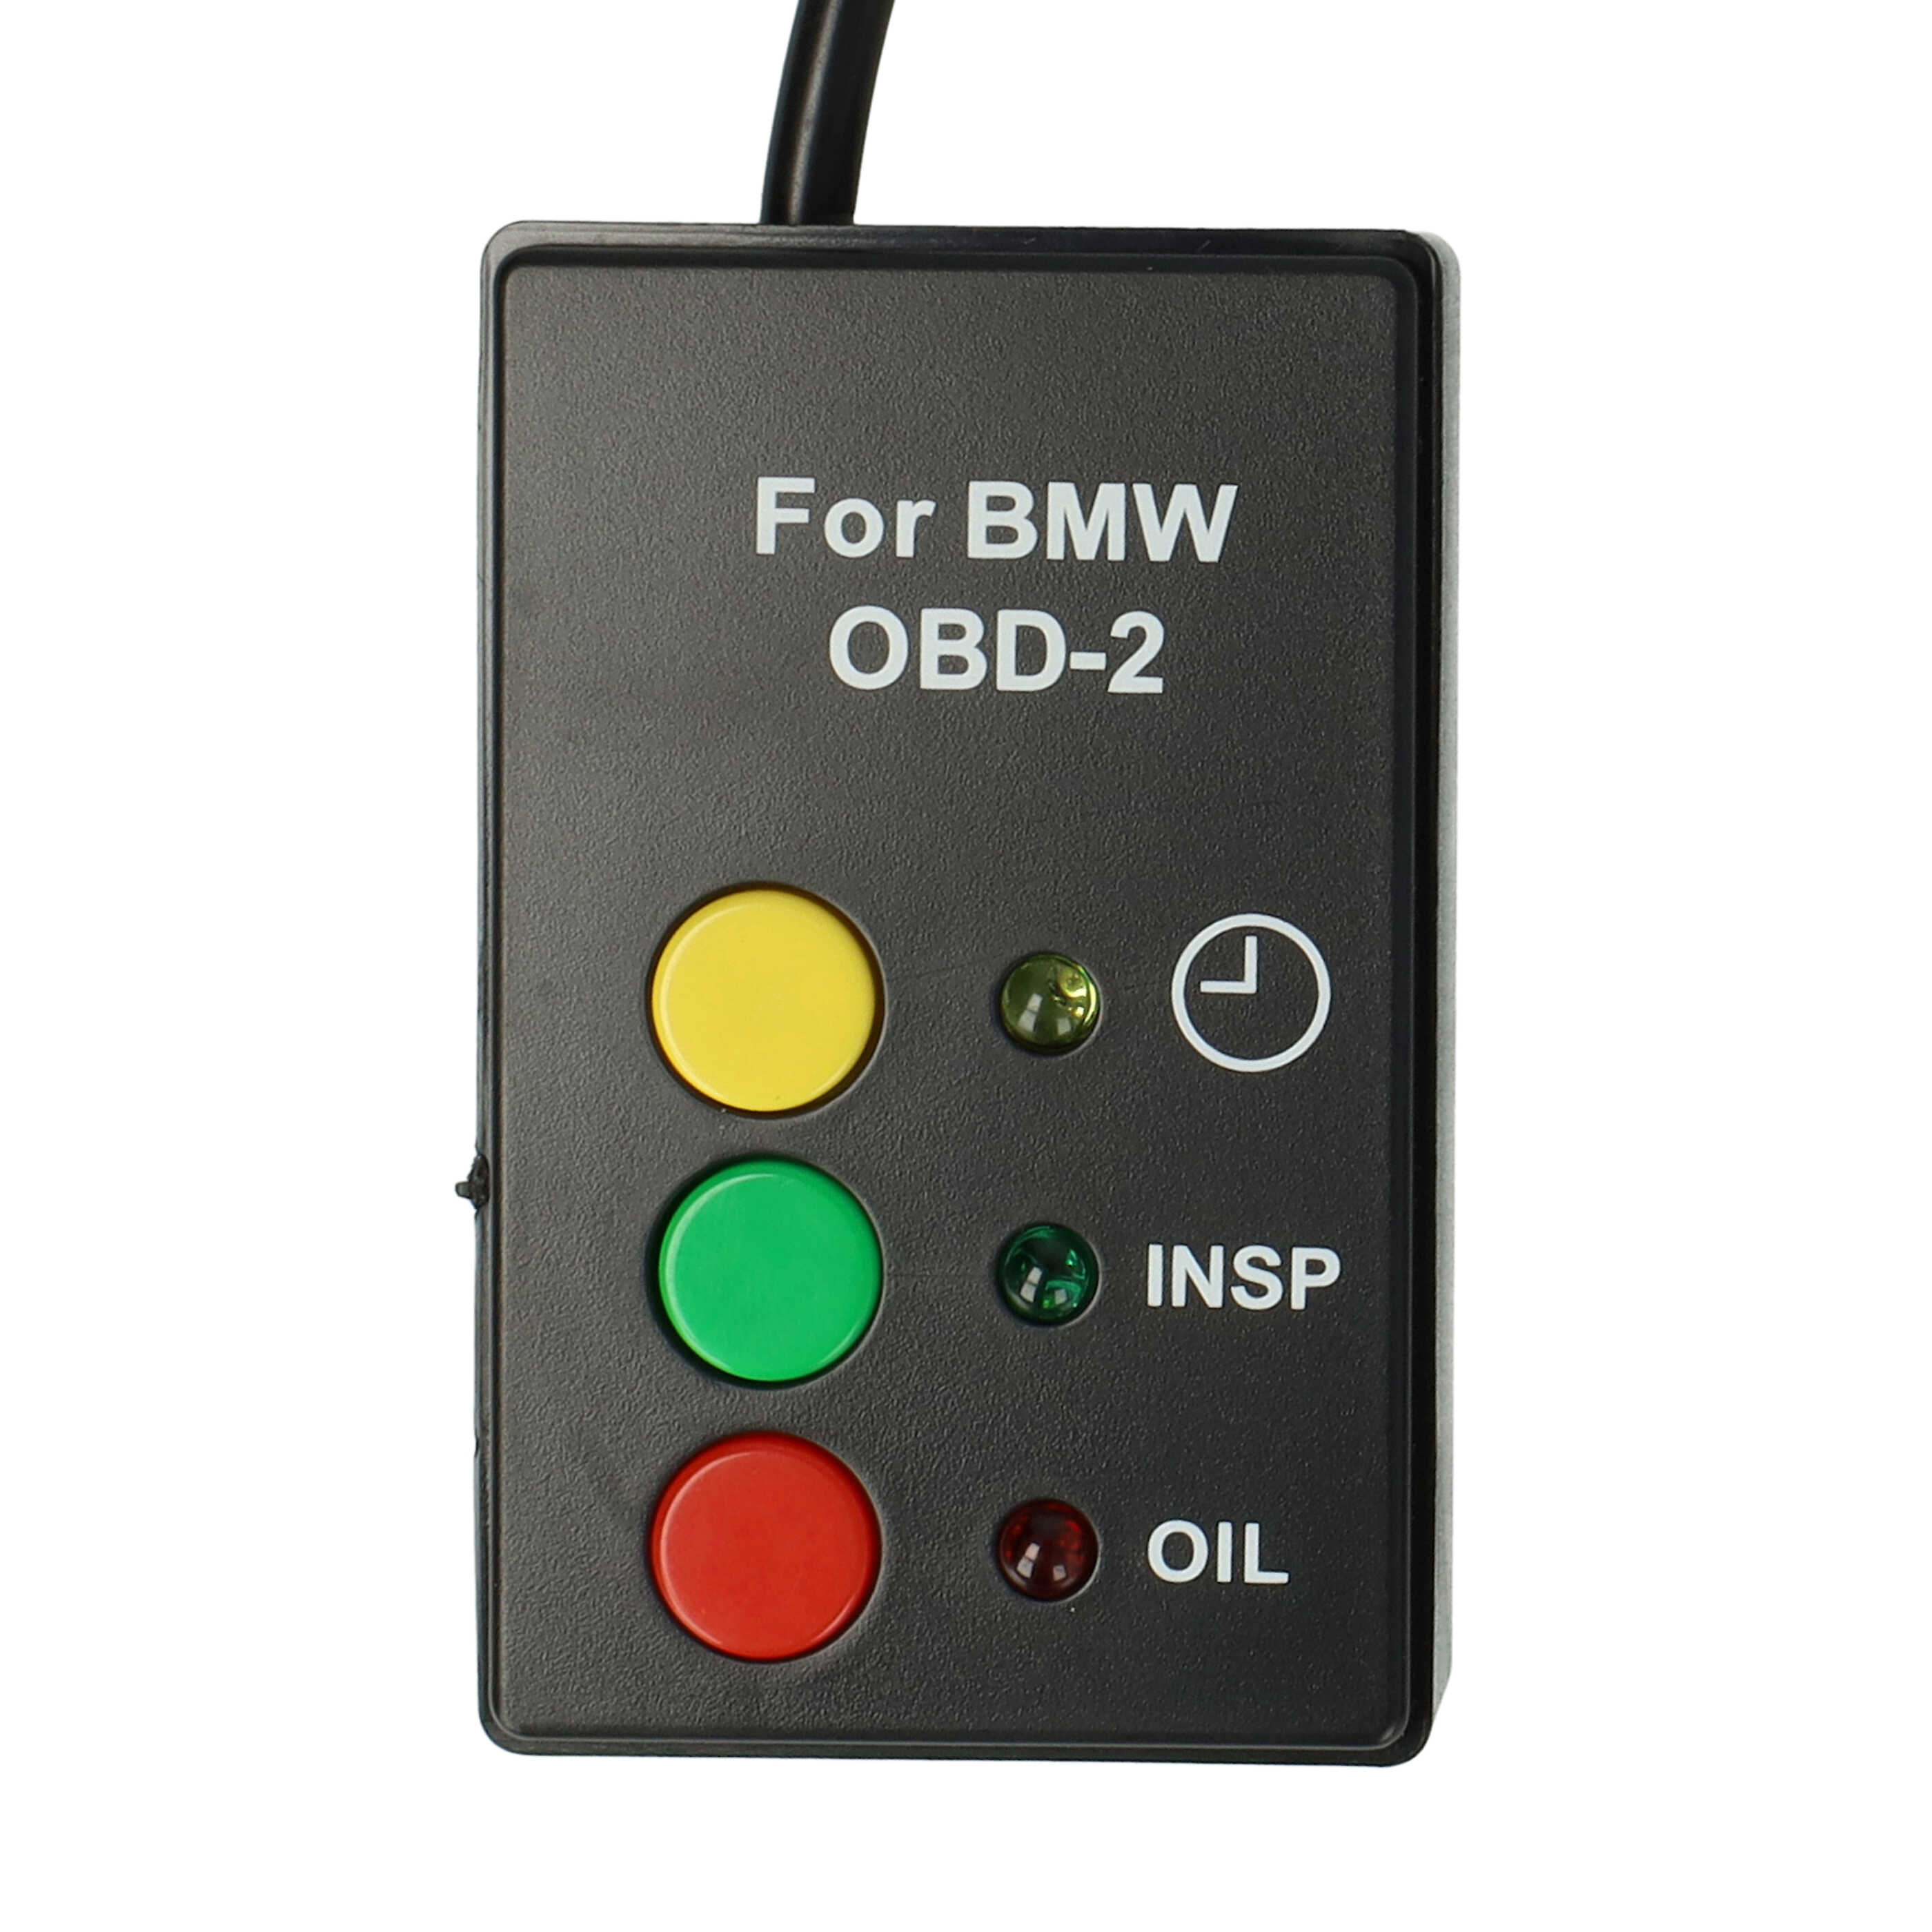 Serviceanzeigen-Rücksteller für MINI / BMW / Rover ab Bj. 2001 - Plug & Play - OBD2-Anschluss